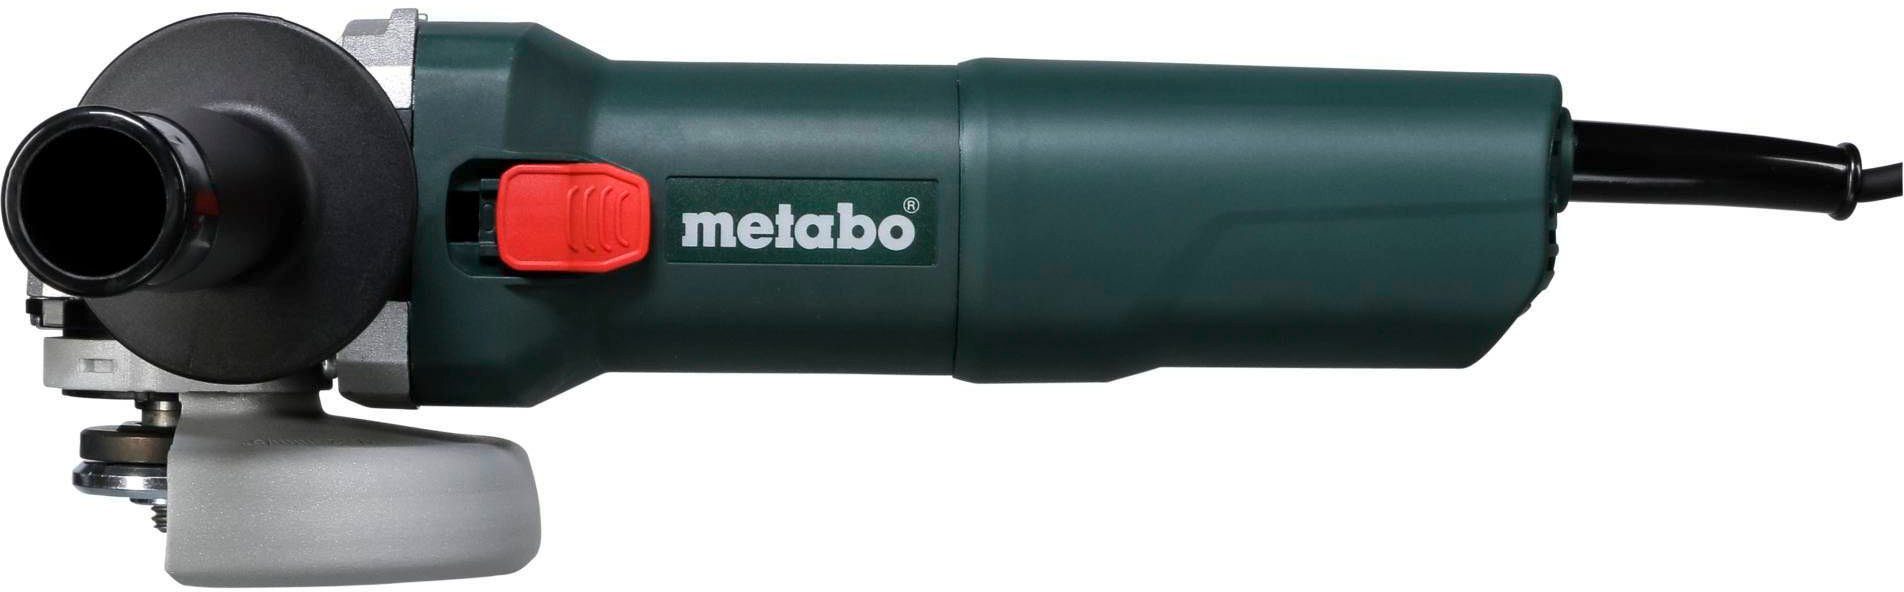 W metabo 1100-125 Winkelschleifer